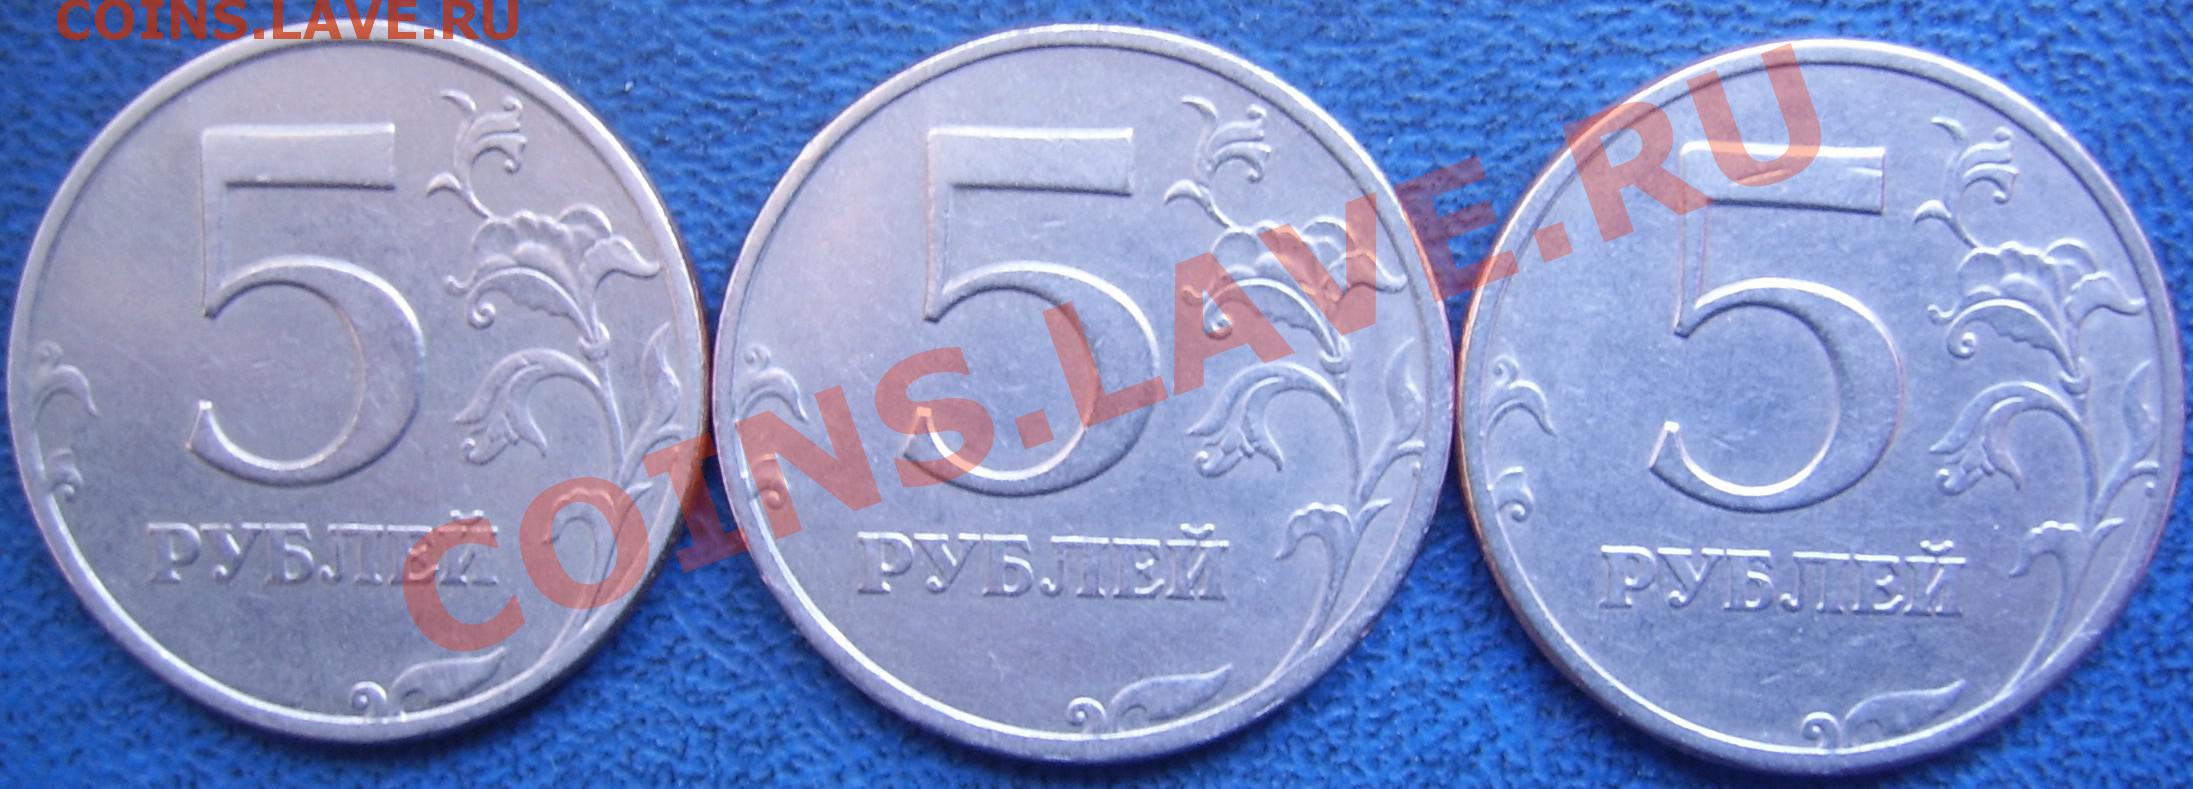 Рубль за 5 секунд. 5 Рублей 1997 СПМД. Беларусь 1 рубль, 1997. Синие пять рублей. 5 Рублей 1997 г. СПМД - шт. 2.23 Увеличенное изображение реверса.